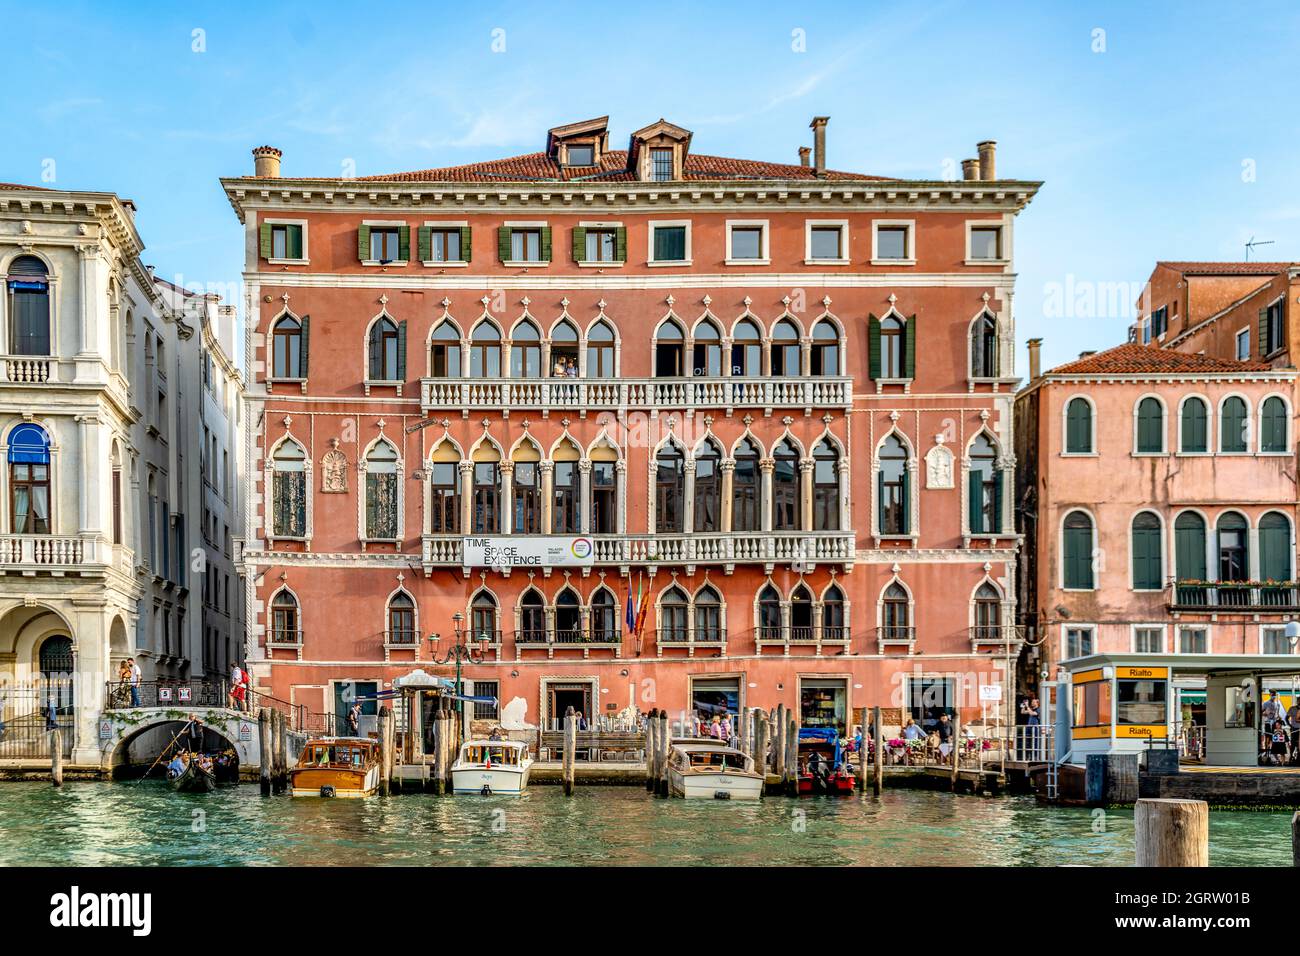 Die façade des Palazzo Bembo mit Blick auf den Canal Grande, erbaut im venezianischen gotisch-byzantinischen Stil im 15. Jahrhundert, Venedig, Italien Stockfoto